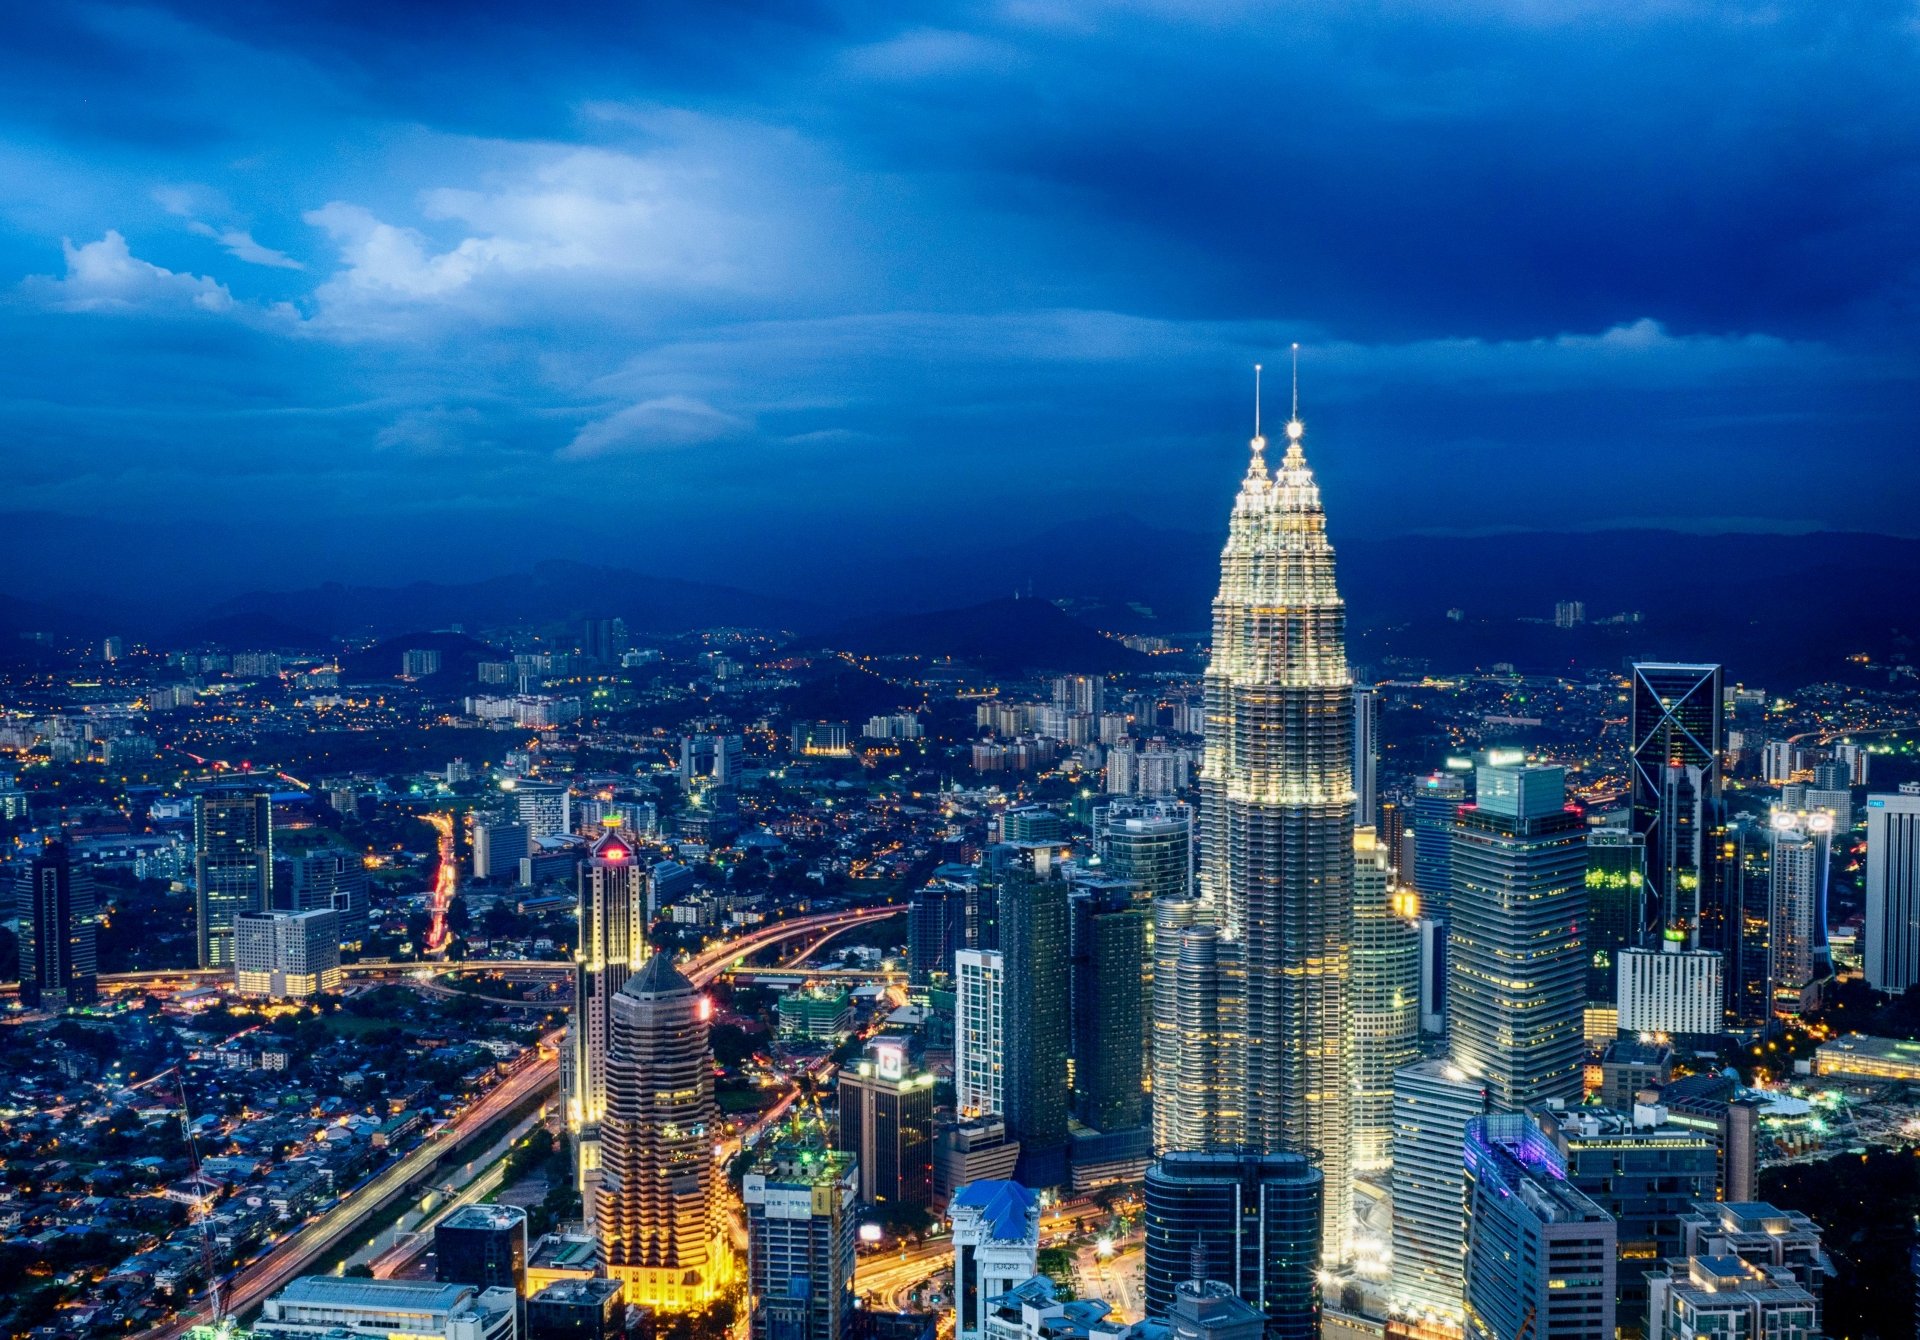 Kuala Lumpur 4k Ultra HD Wallpaper Background Image